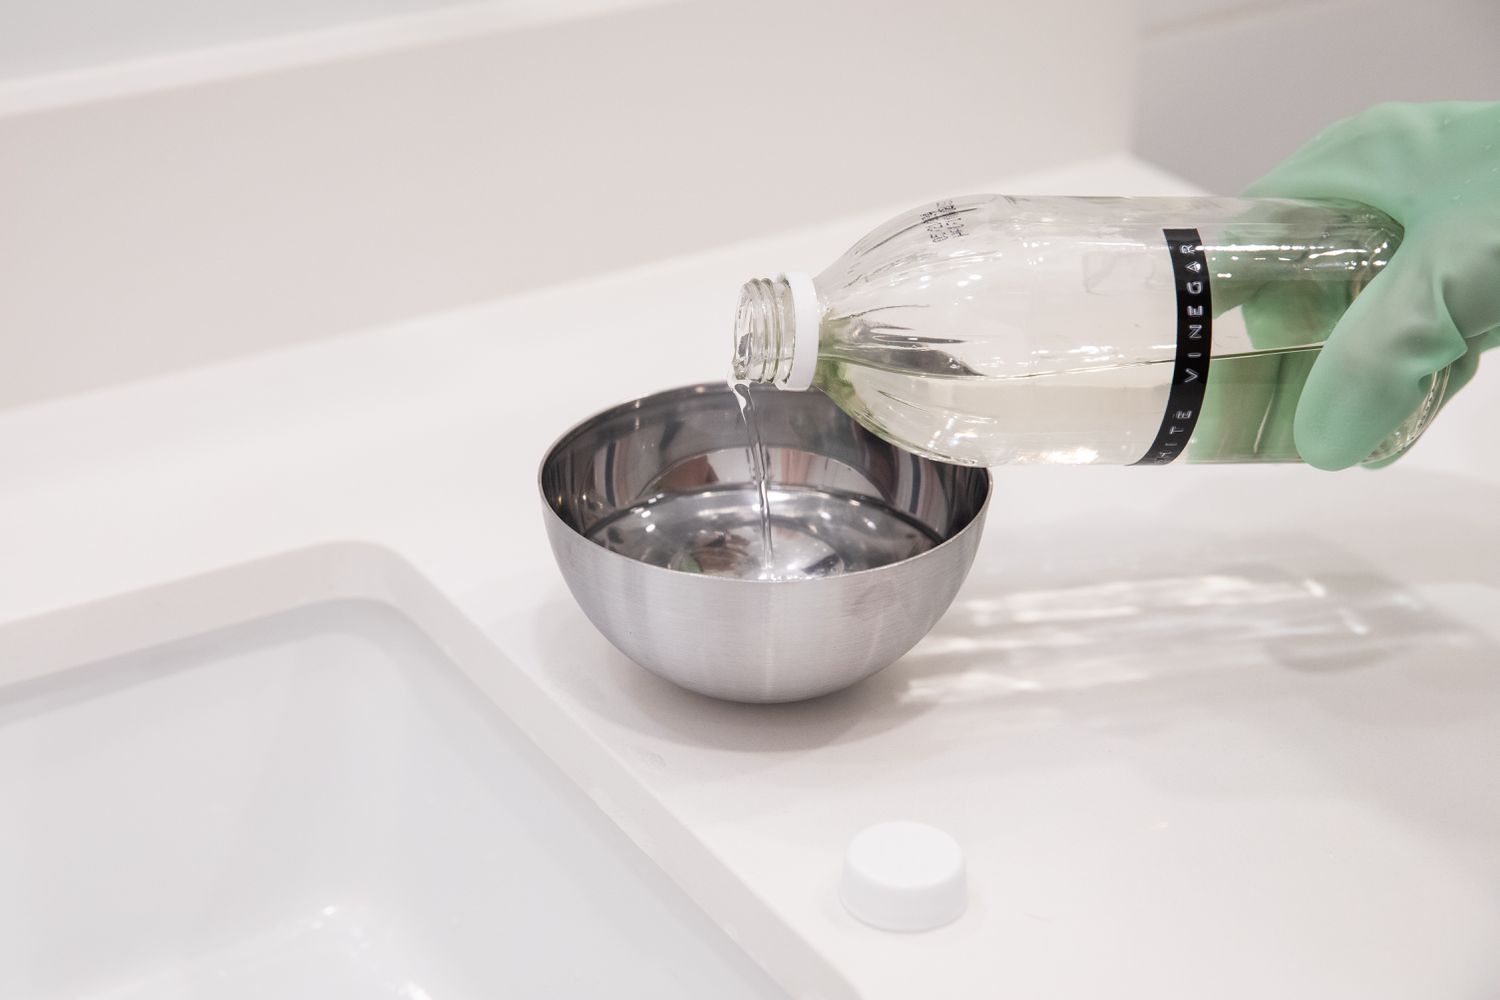 Vinagre blanco destilado vertido en un cuenco metálico con agua como solución limpiadora